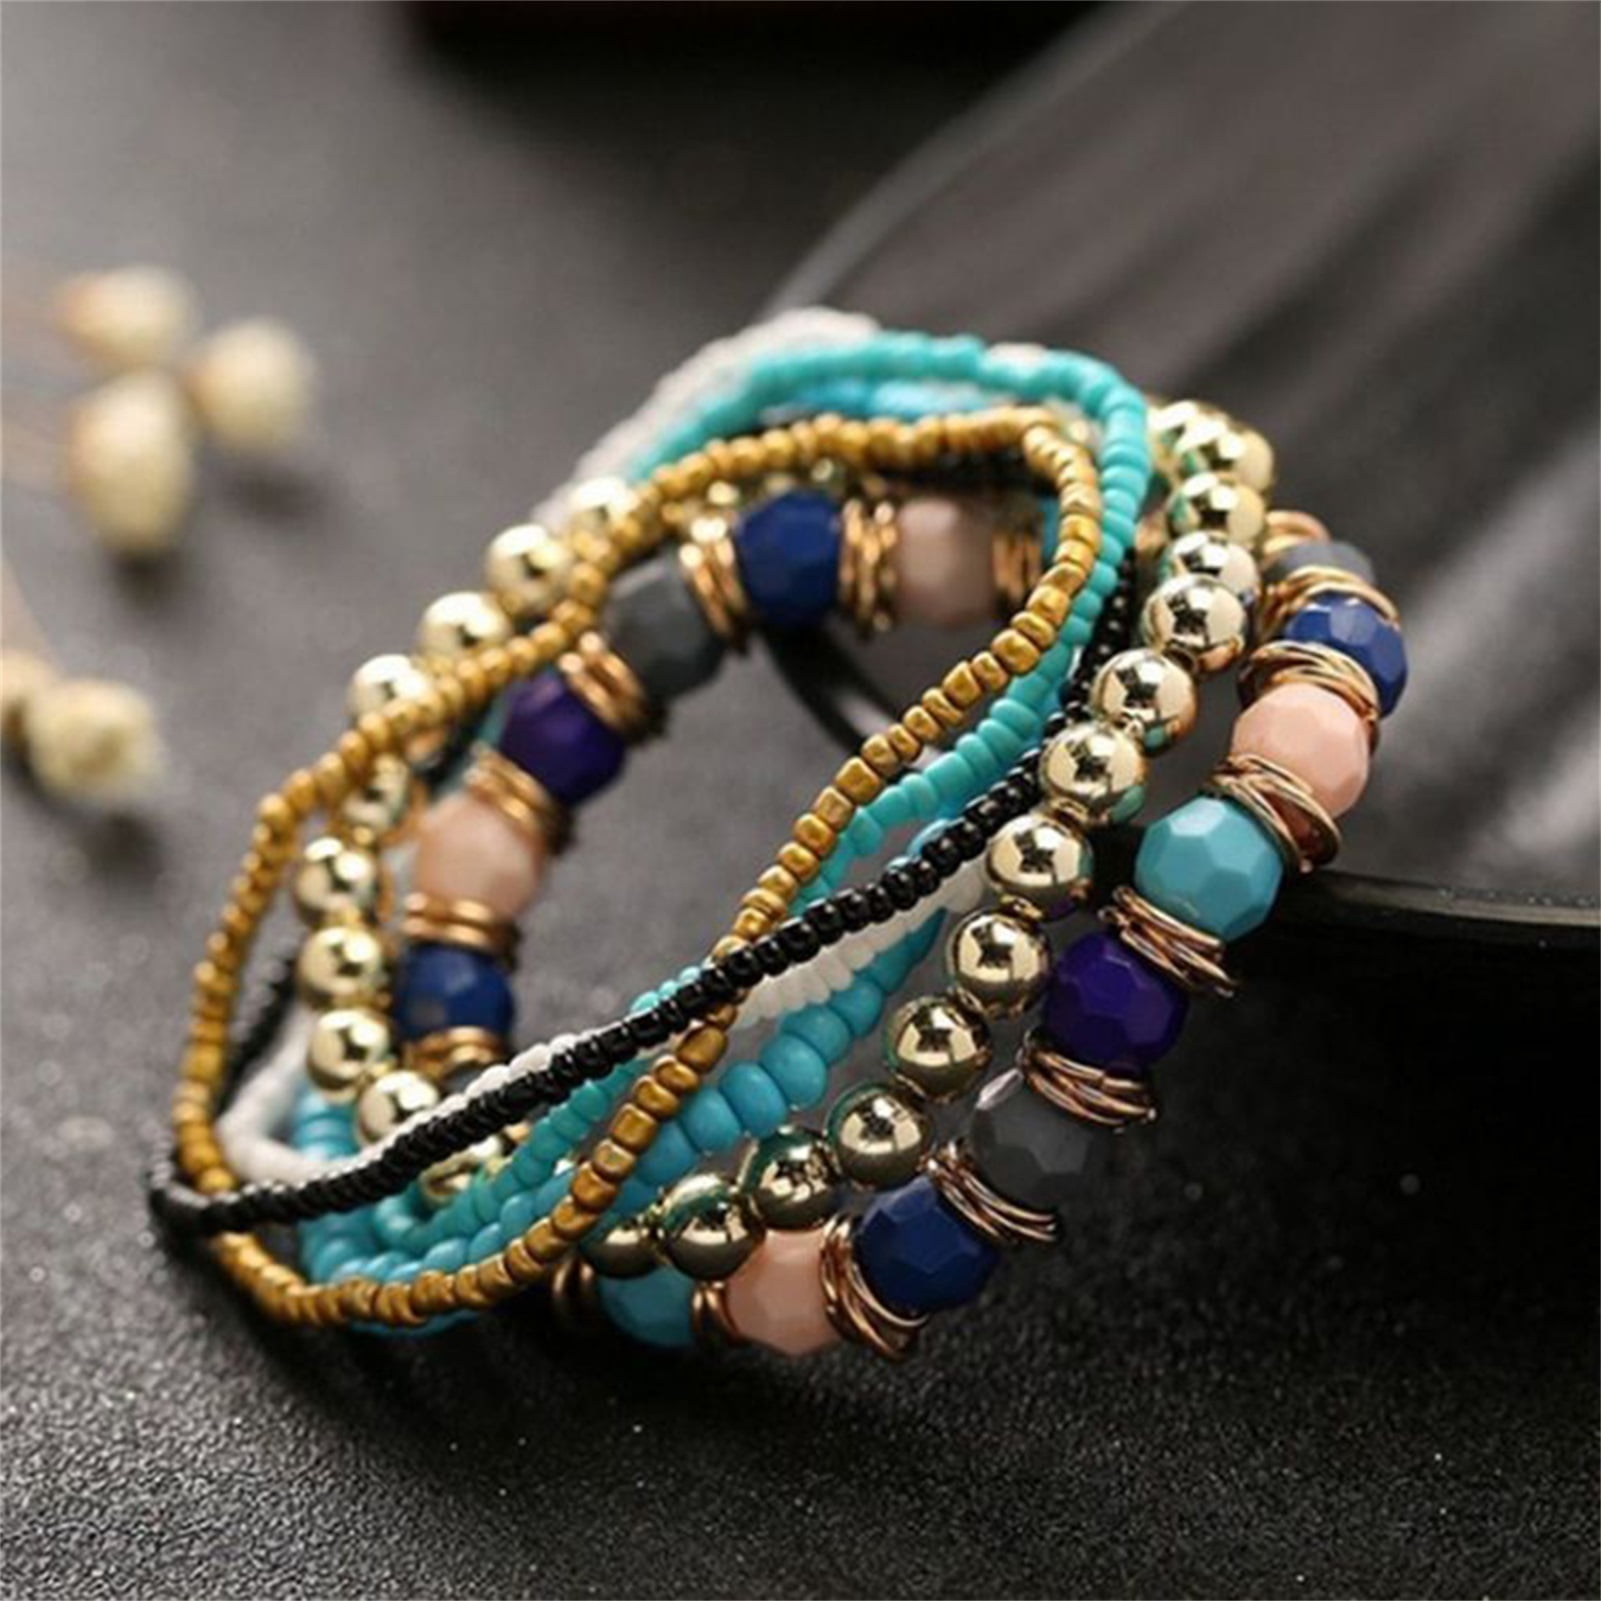 Boho Fiesta Bracelet Kit - Seed Beads and Leather Bracelet - Boho Styl –